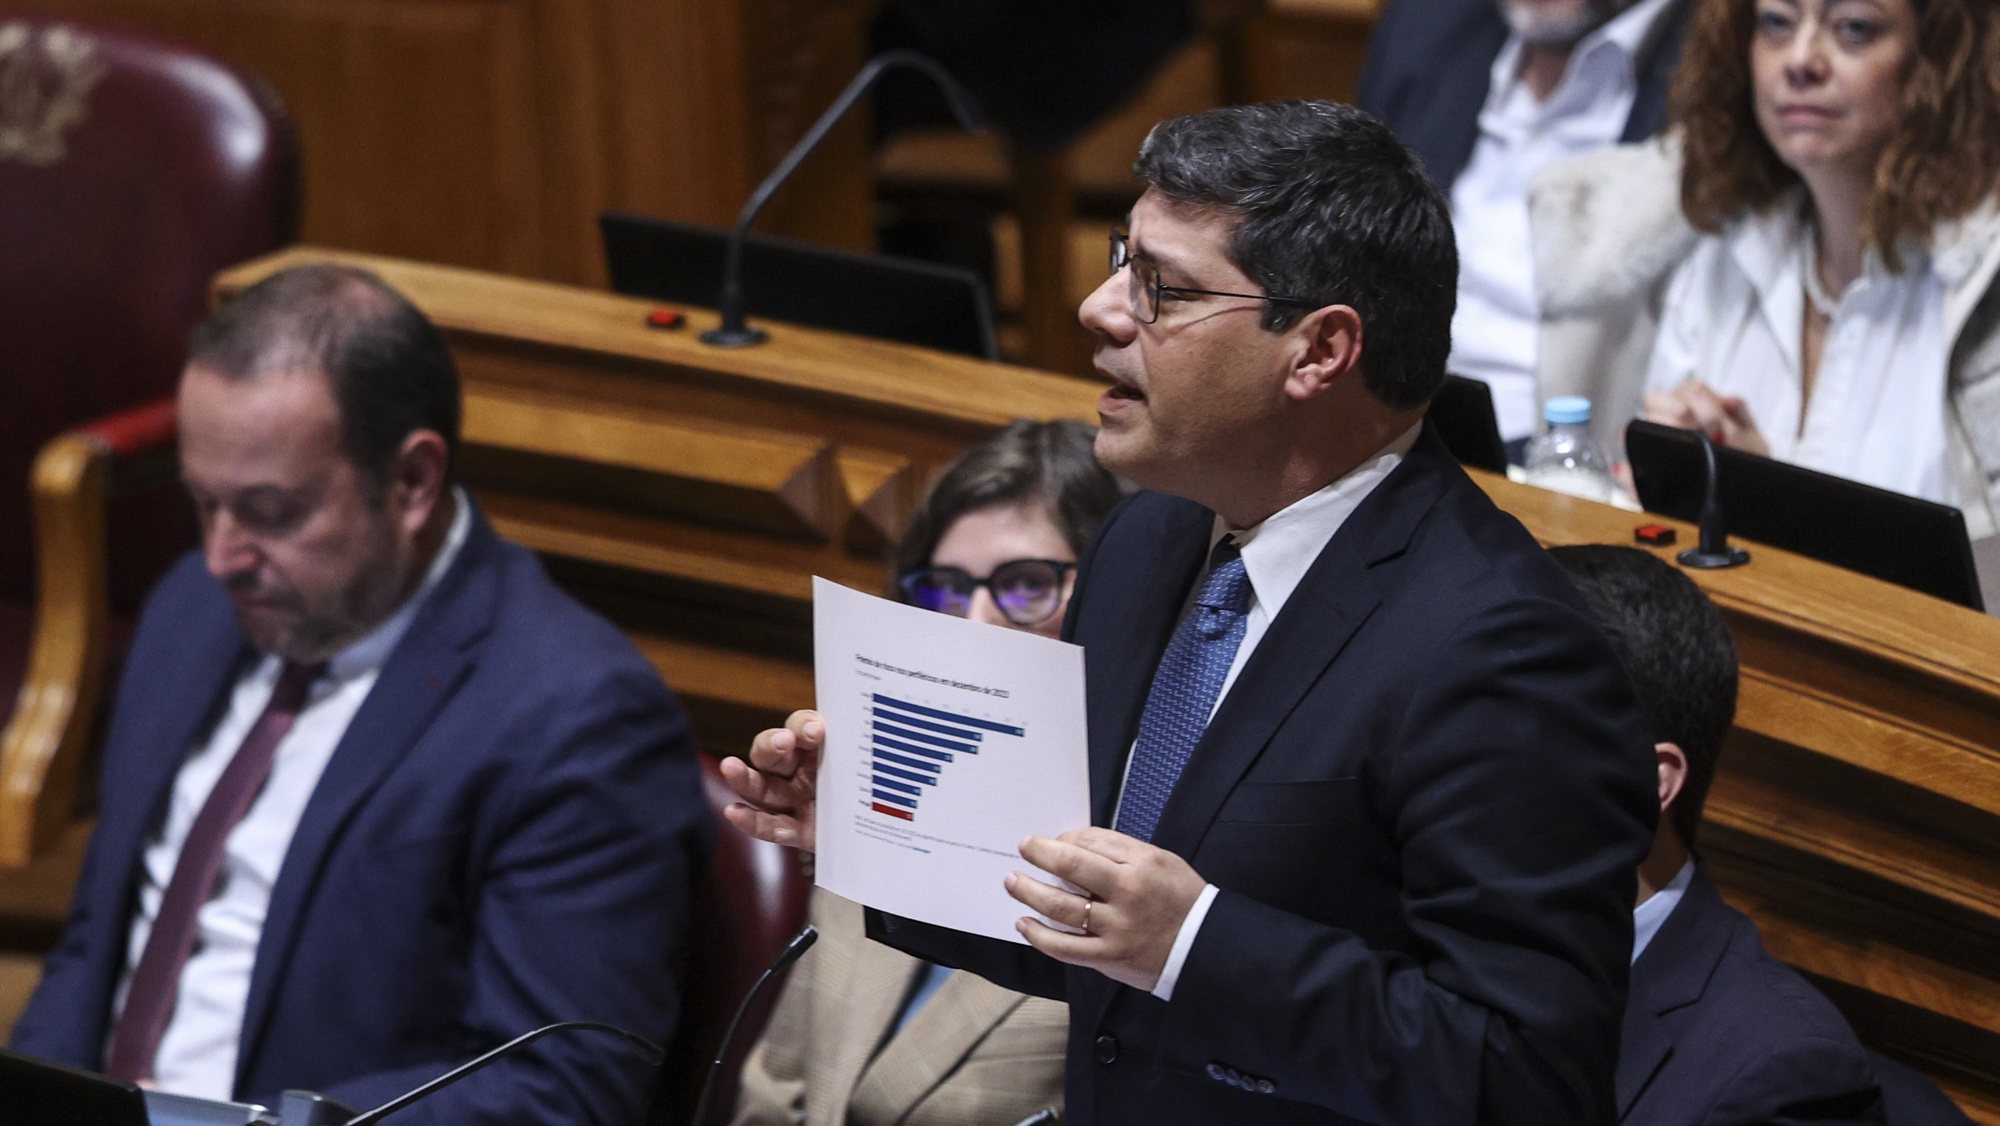 O lider parlamentar do PS Eurico Brilhante Dias intervém no debate parlamentar sobre política geral, esta tarde na Assembleia da República em Lisboa, 11 de janeiro de 2023. MIGUEL A. LOPES/LUSA